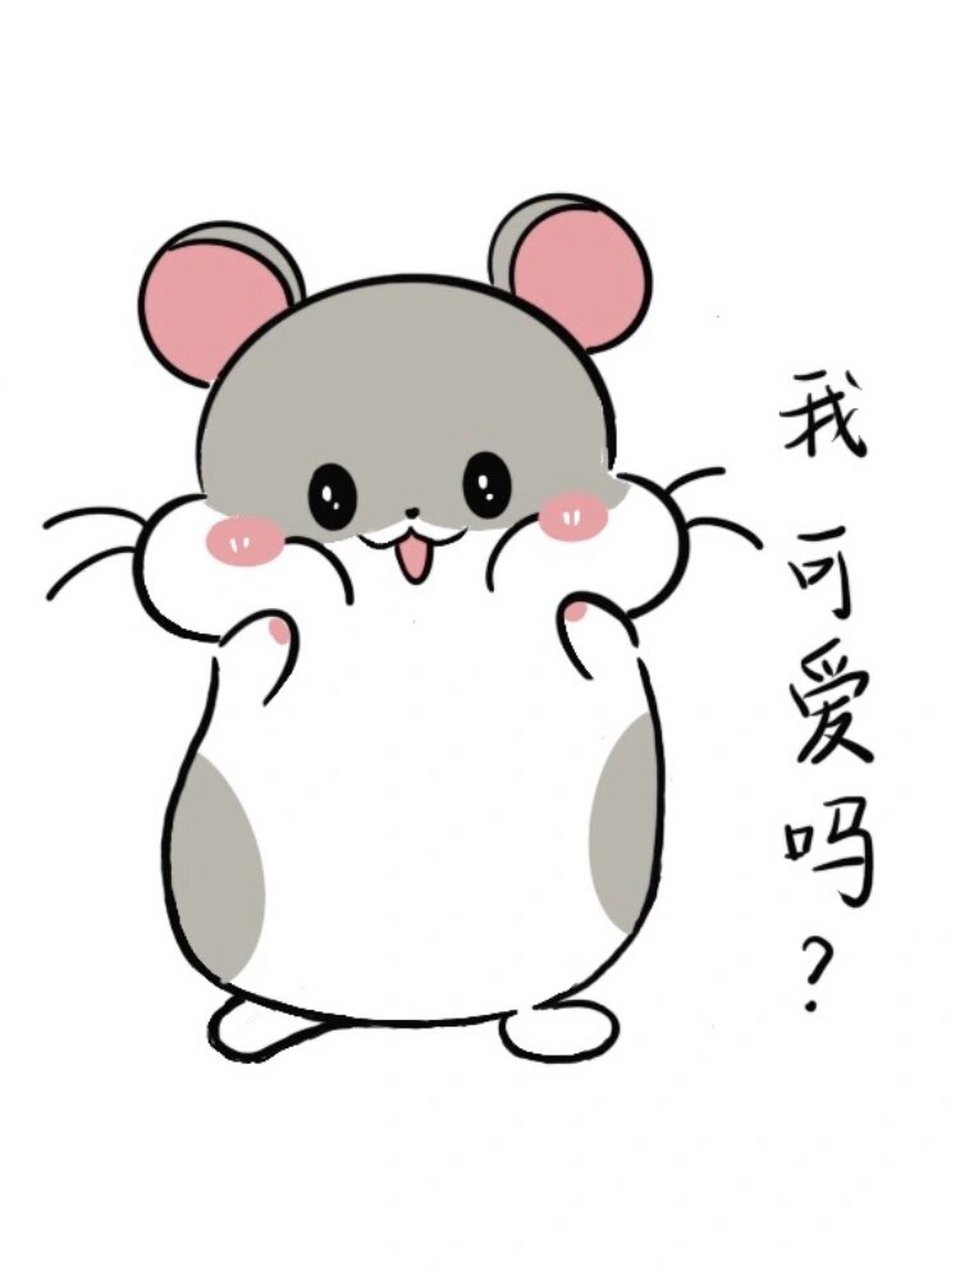 手残党每天学简笔画附教程99 今天画个可爱的小仓鼠,你值得拥有一个